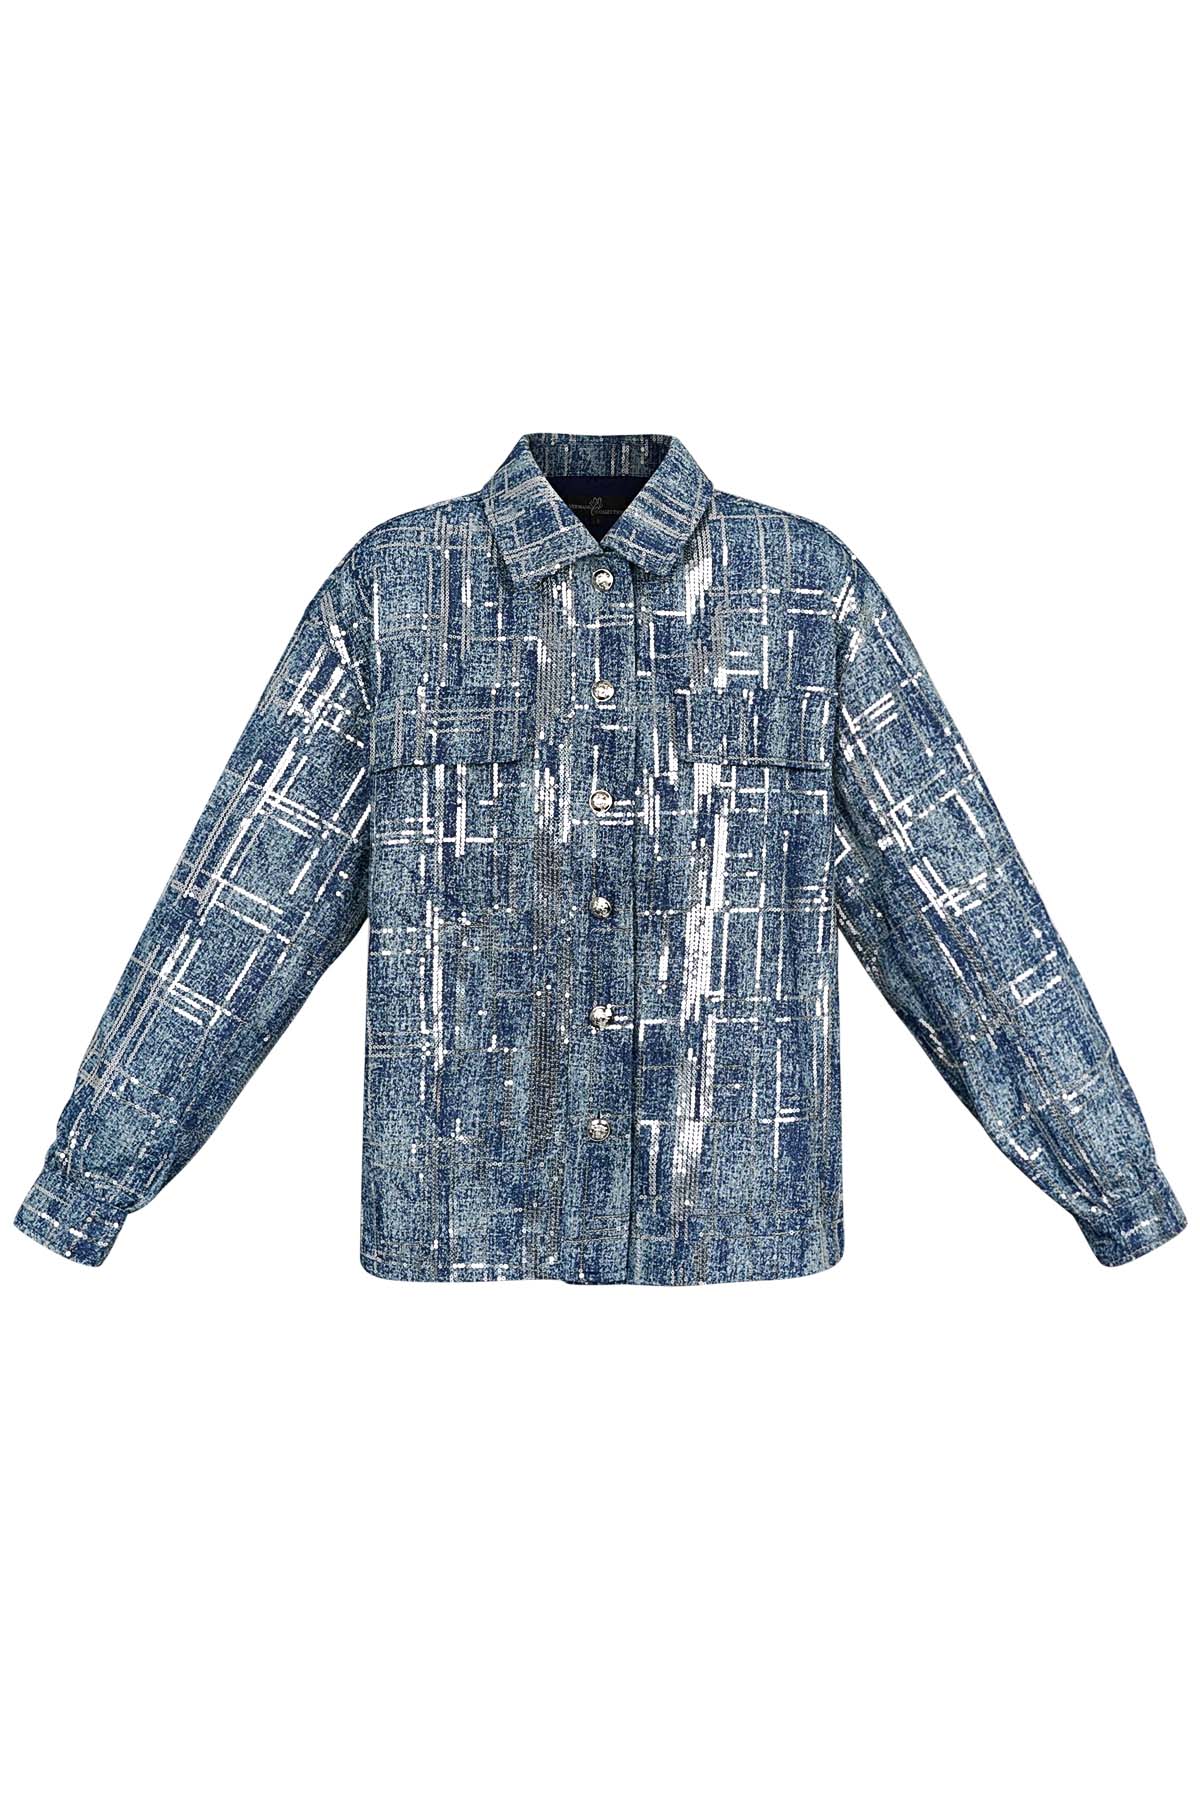 Jacket denim look with sequins - blue - S